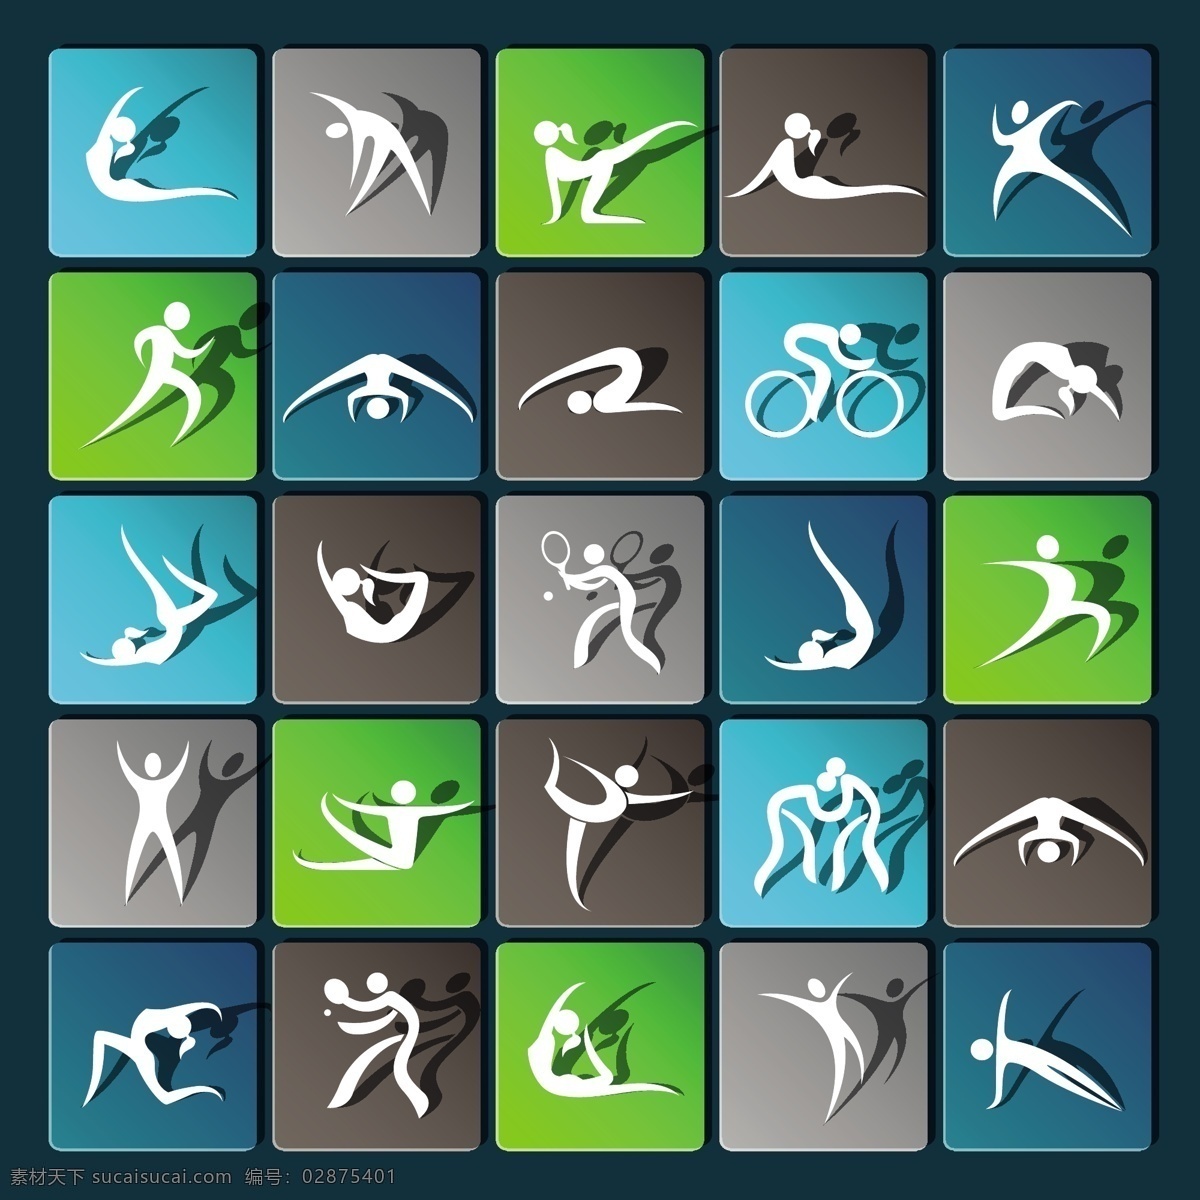 运动项目 奥运会 剪影 矢量 动态 人物 运动会 标志图标 公共标识标志 青色 天蓝色